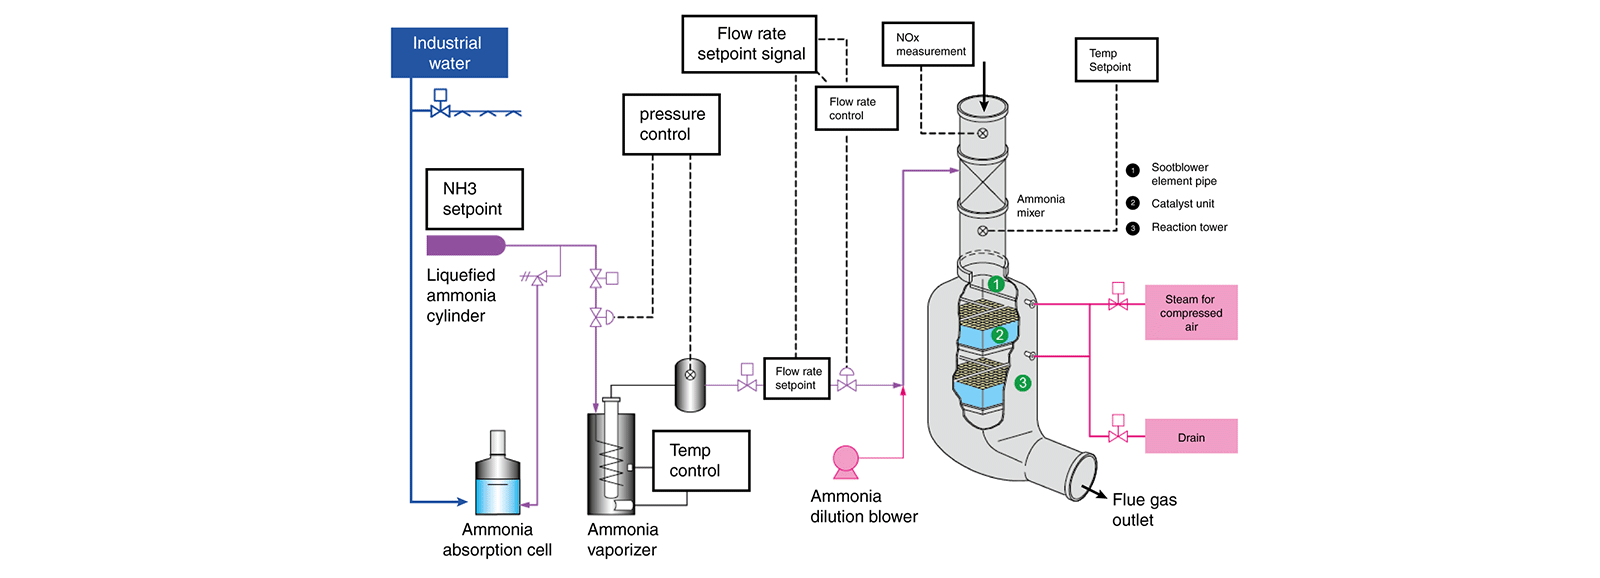 Utstyr for denitrifikasjon med selektiv ikke-katalytisk reduksjon sncr